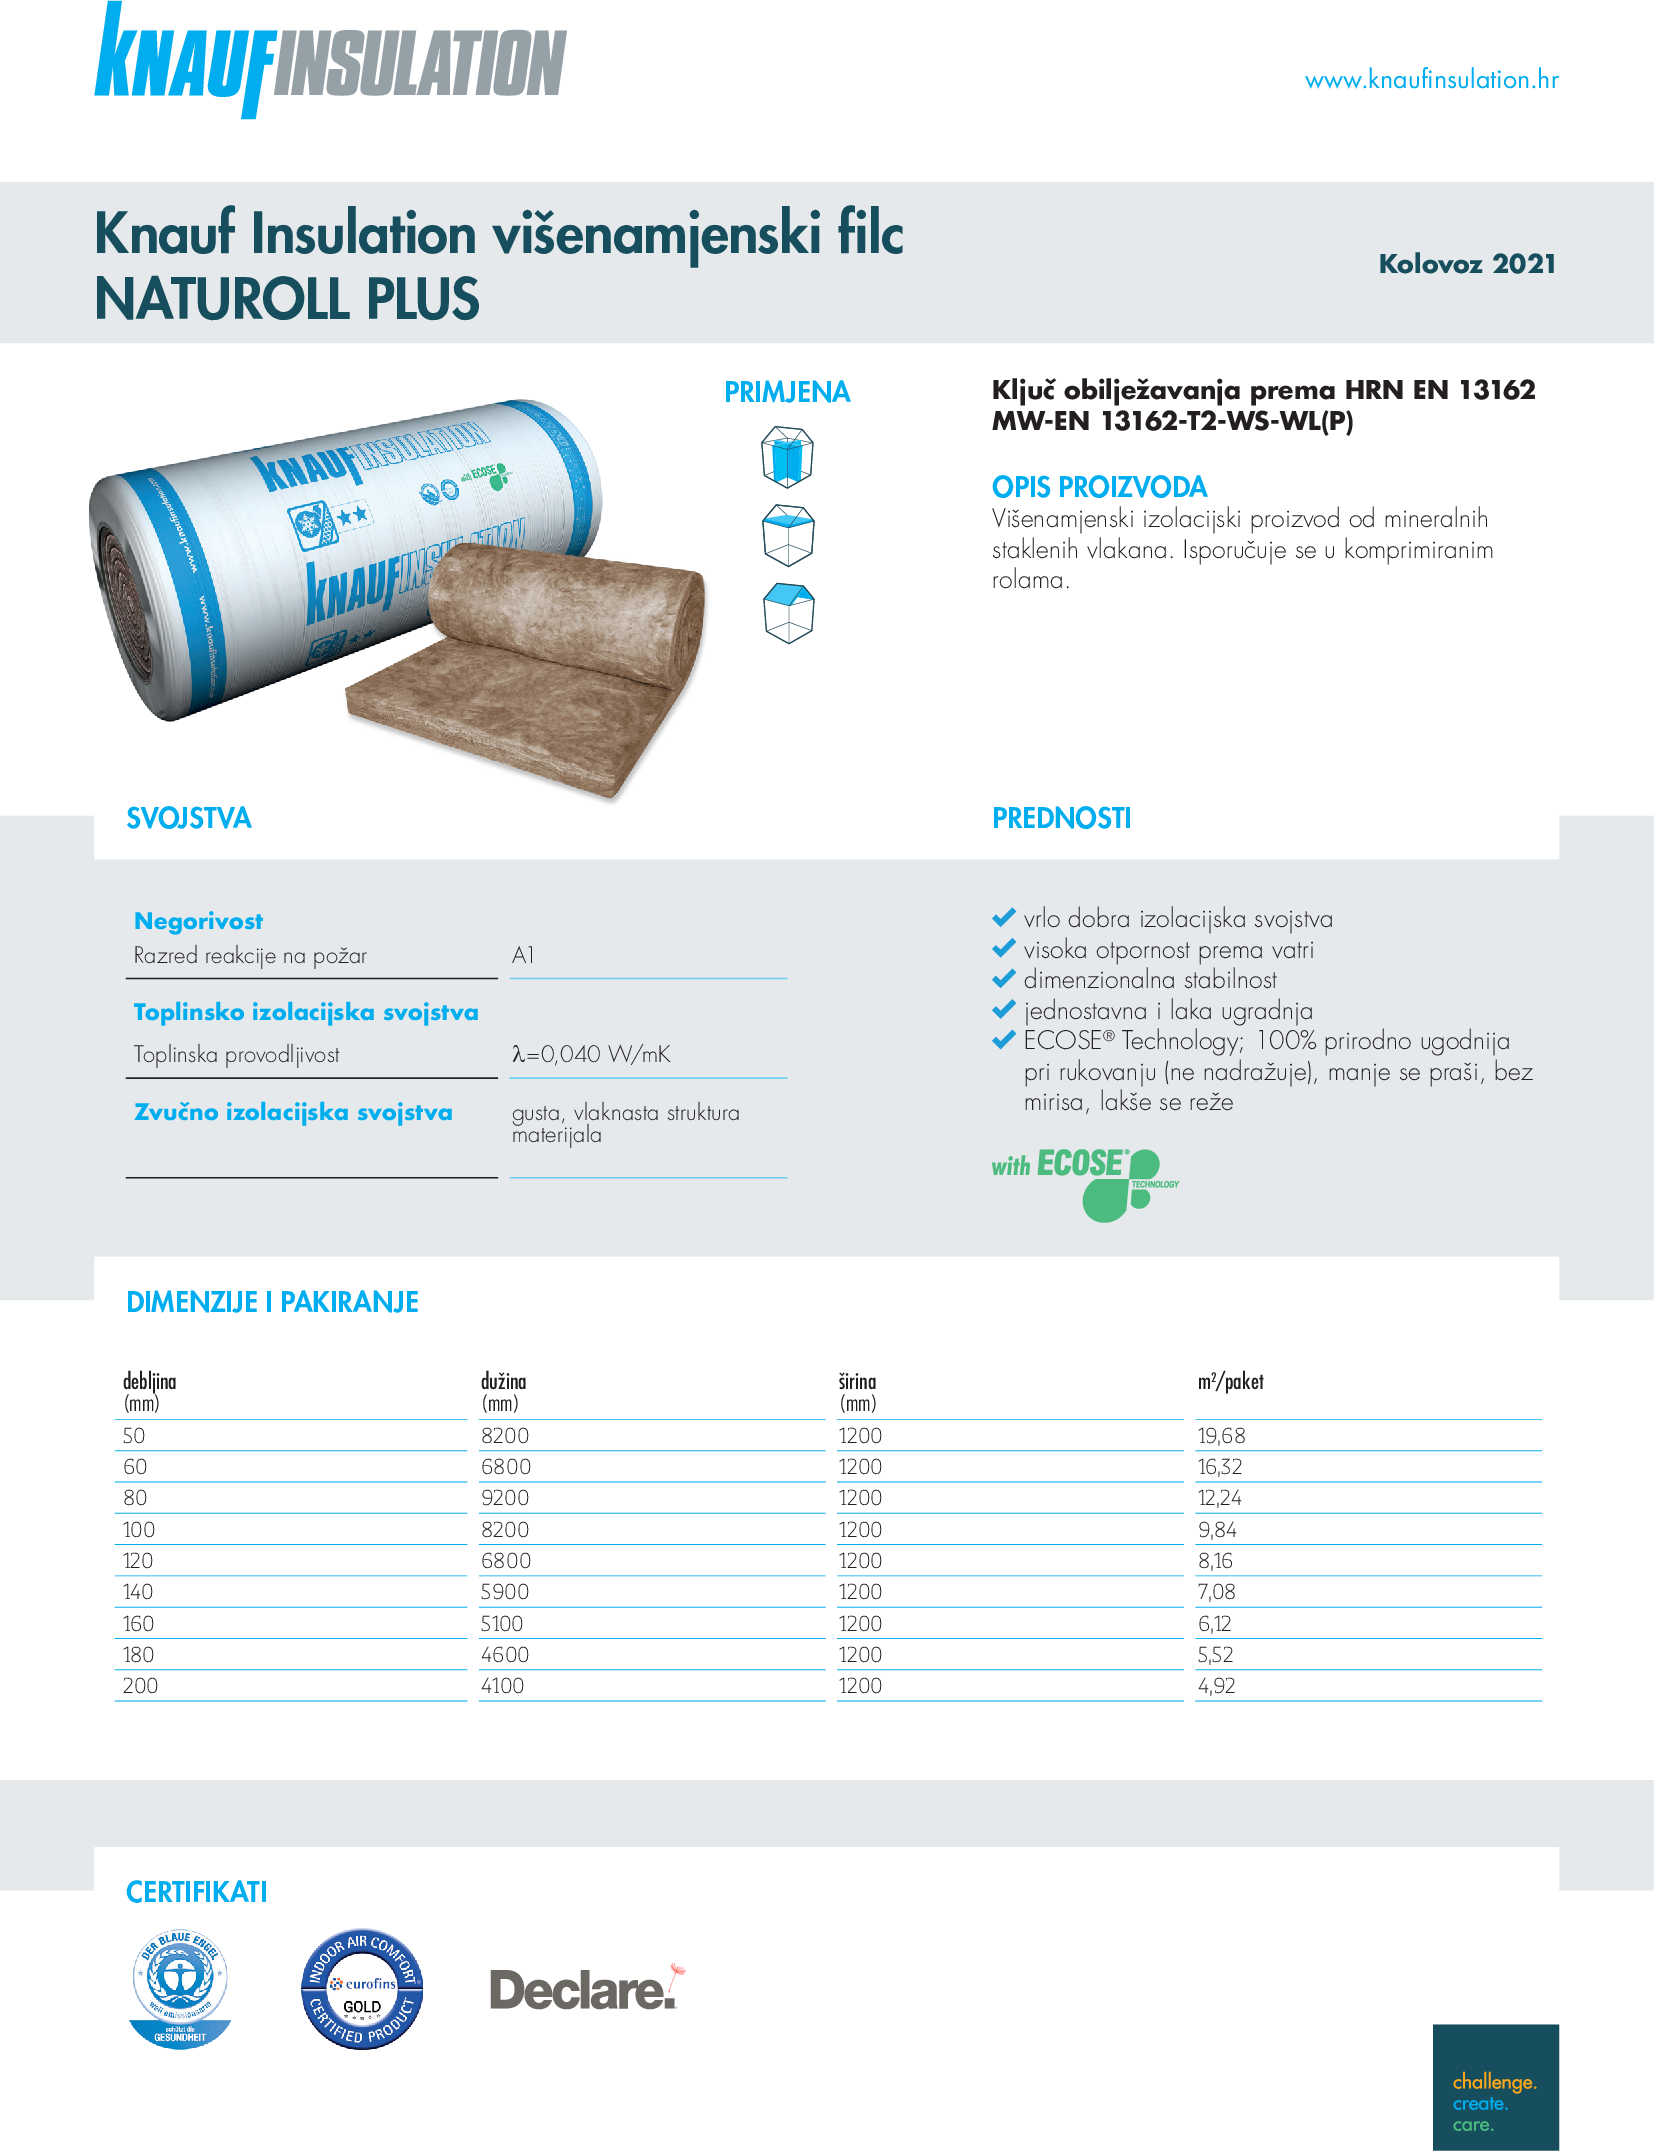 Knauf Insulation višenamjenski filc NatuRoll Plus